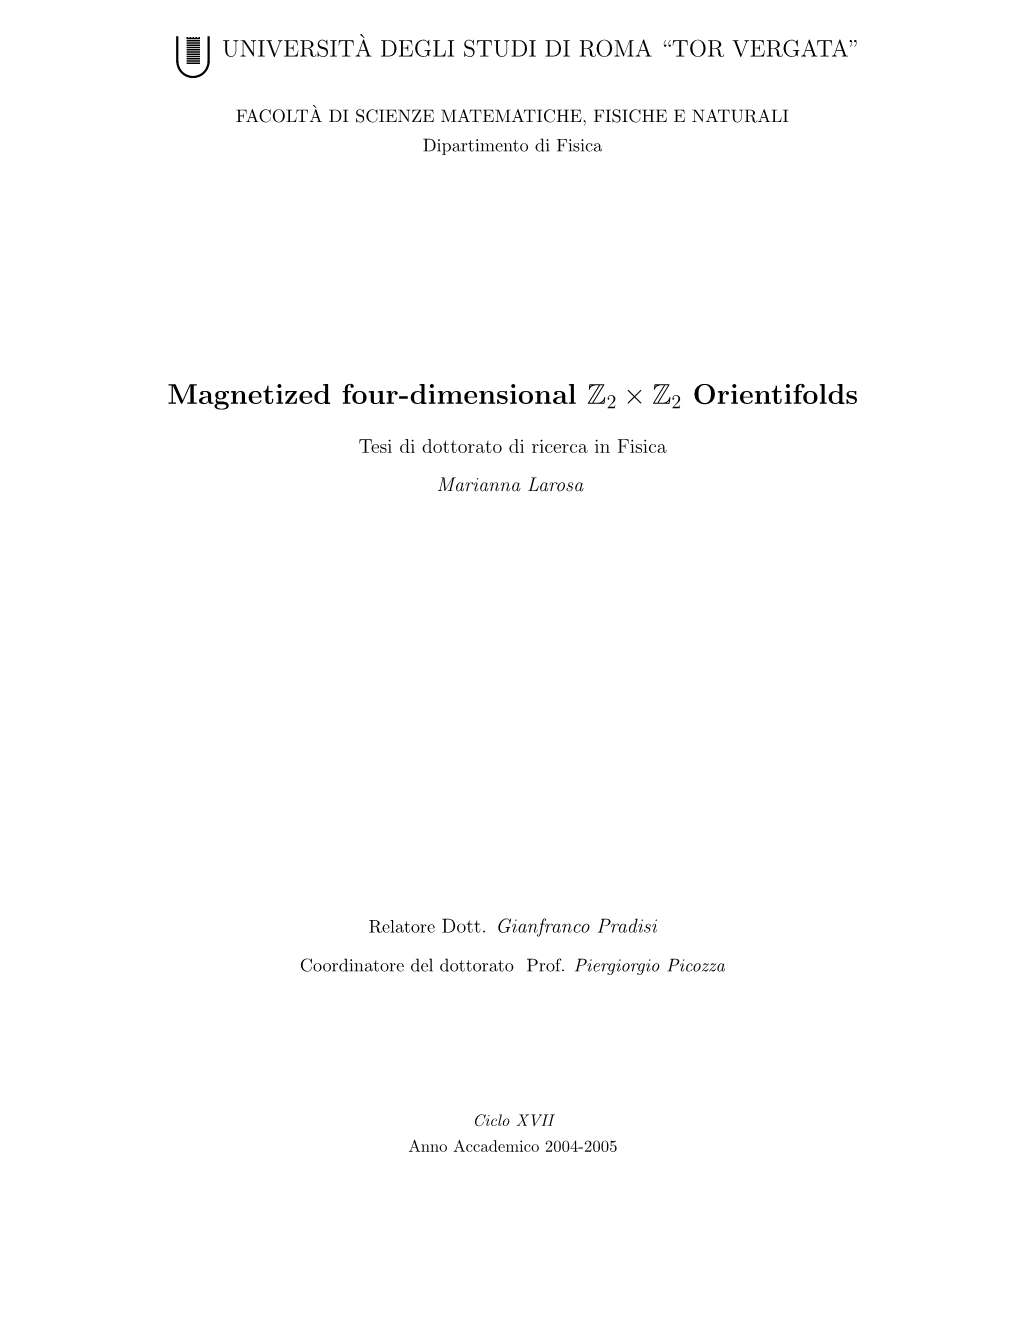 Magnetized Four-Dimensional Z2 × Z2 Orientifolds